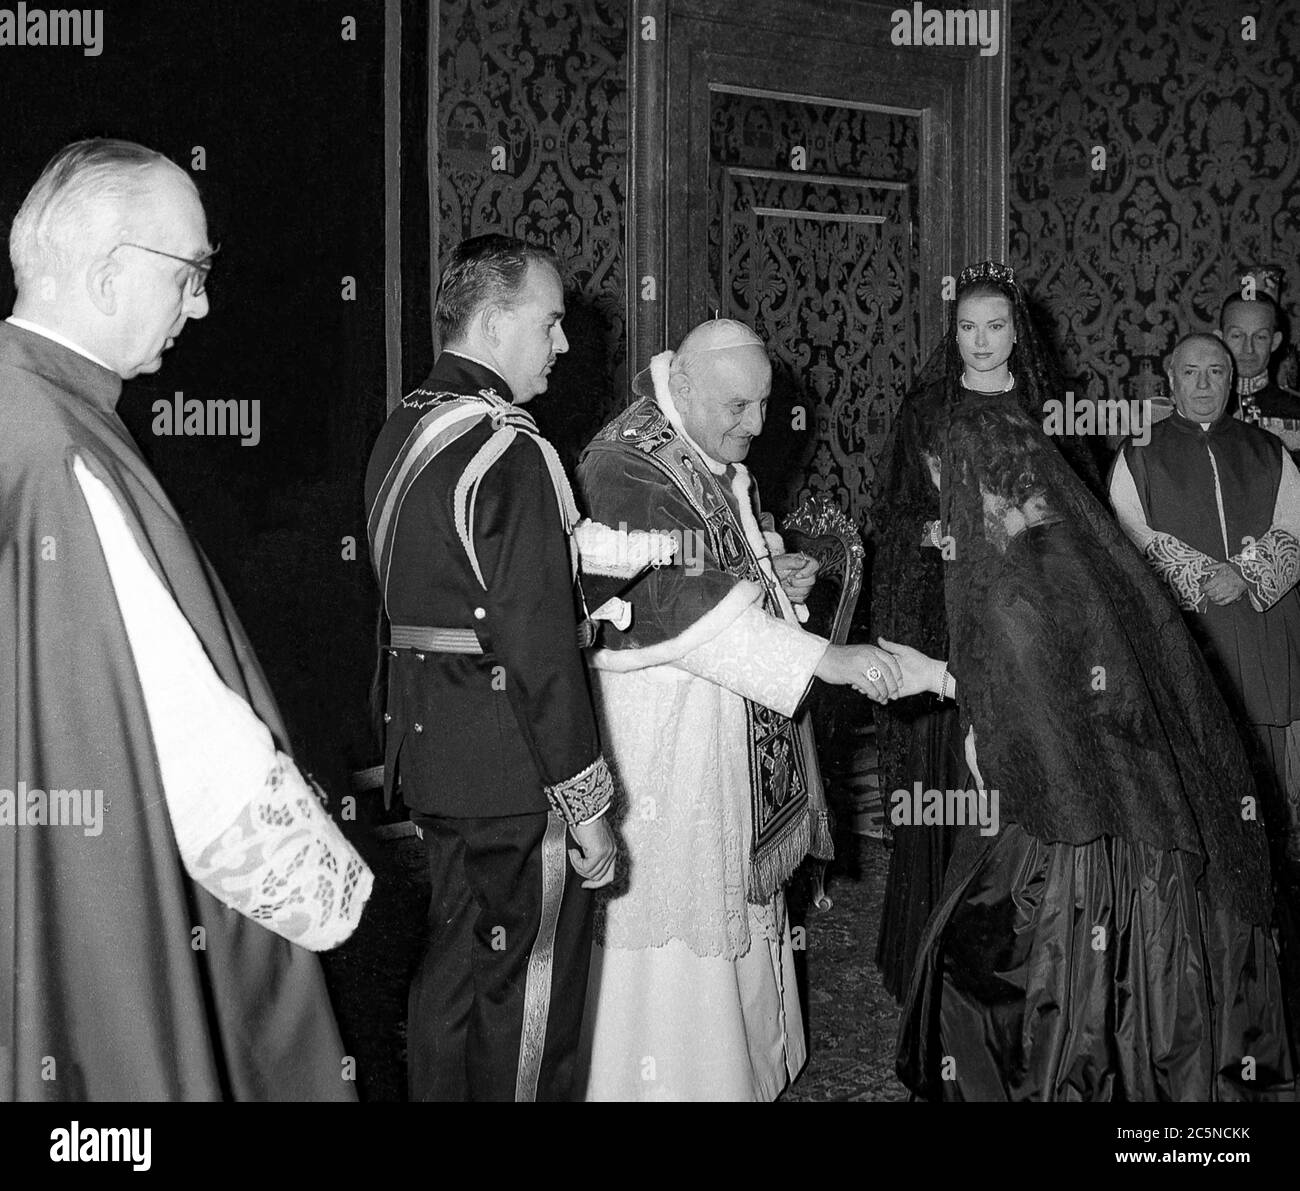 Vatikanpapst Jhon XXIII Audienz mit dem Papst der Prinzipien von Monaco 18. Juni 1959 -Prinz ranieri und Gnade von monaco Stockfoto